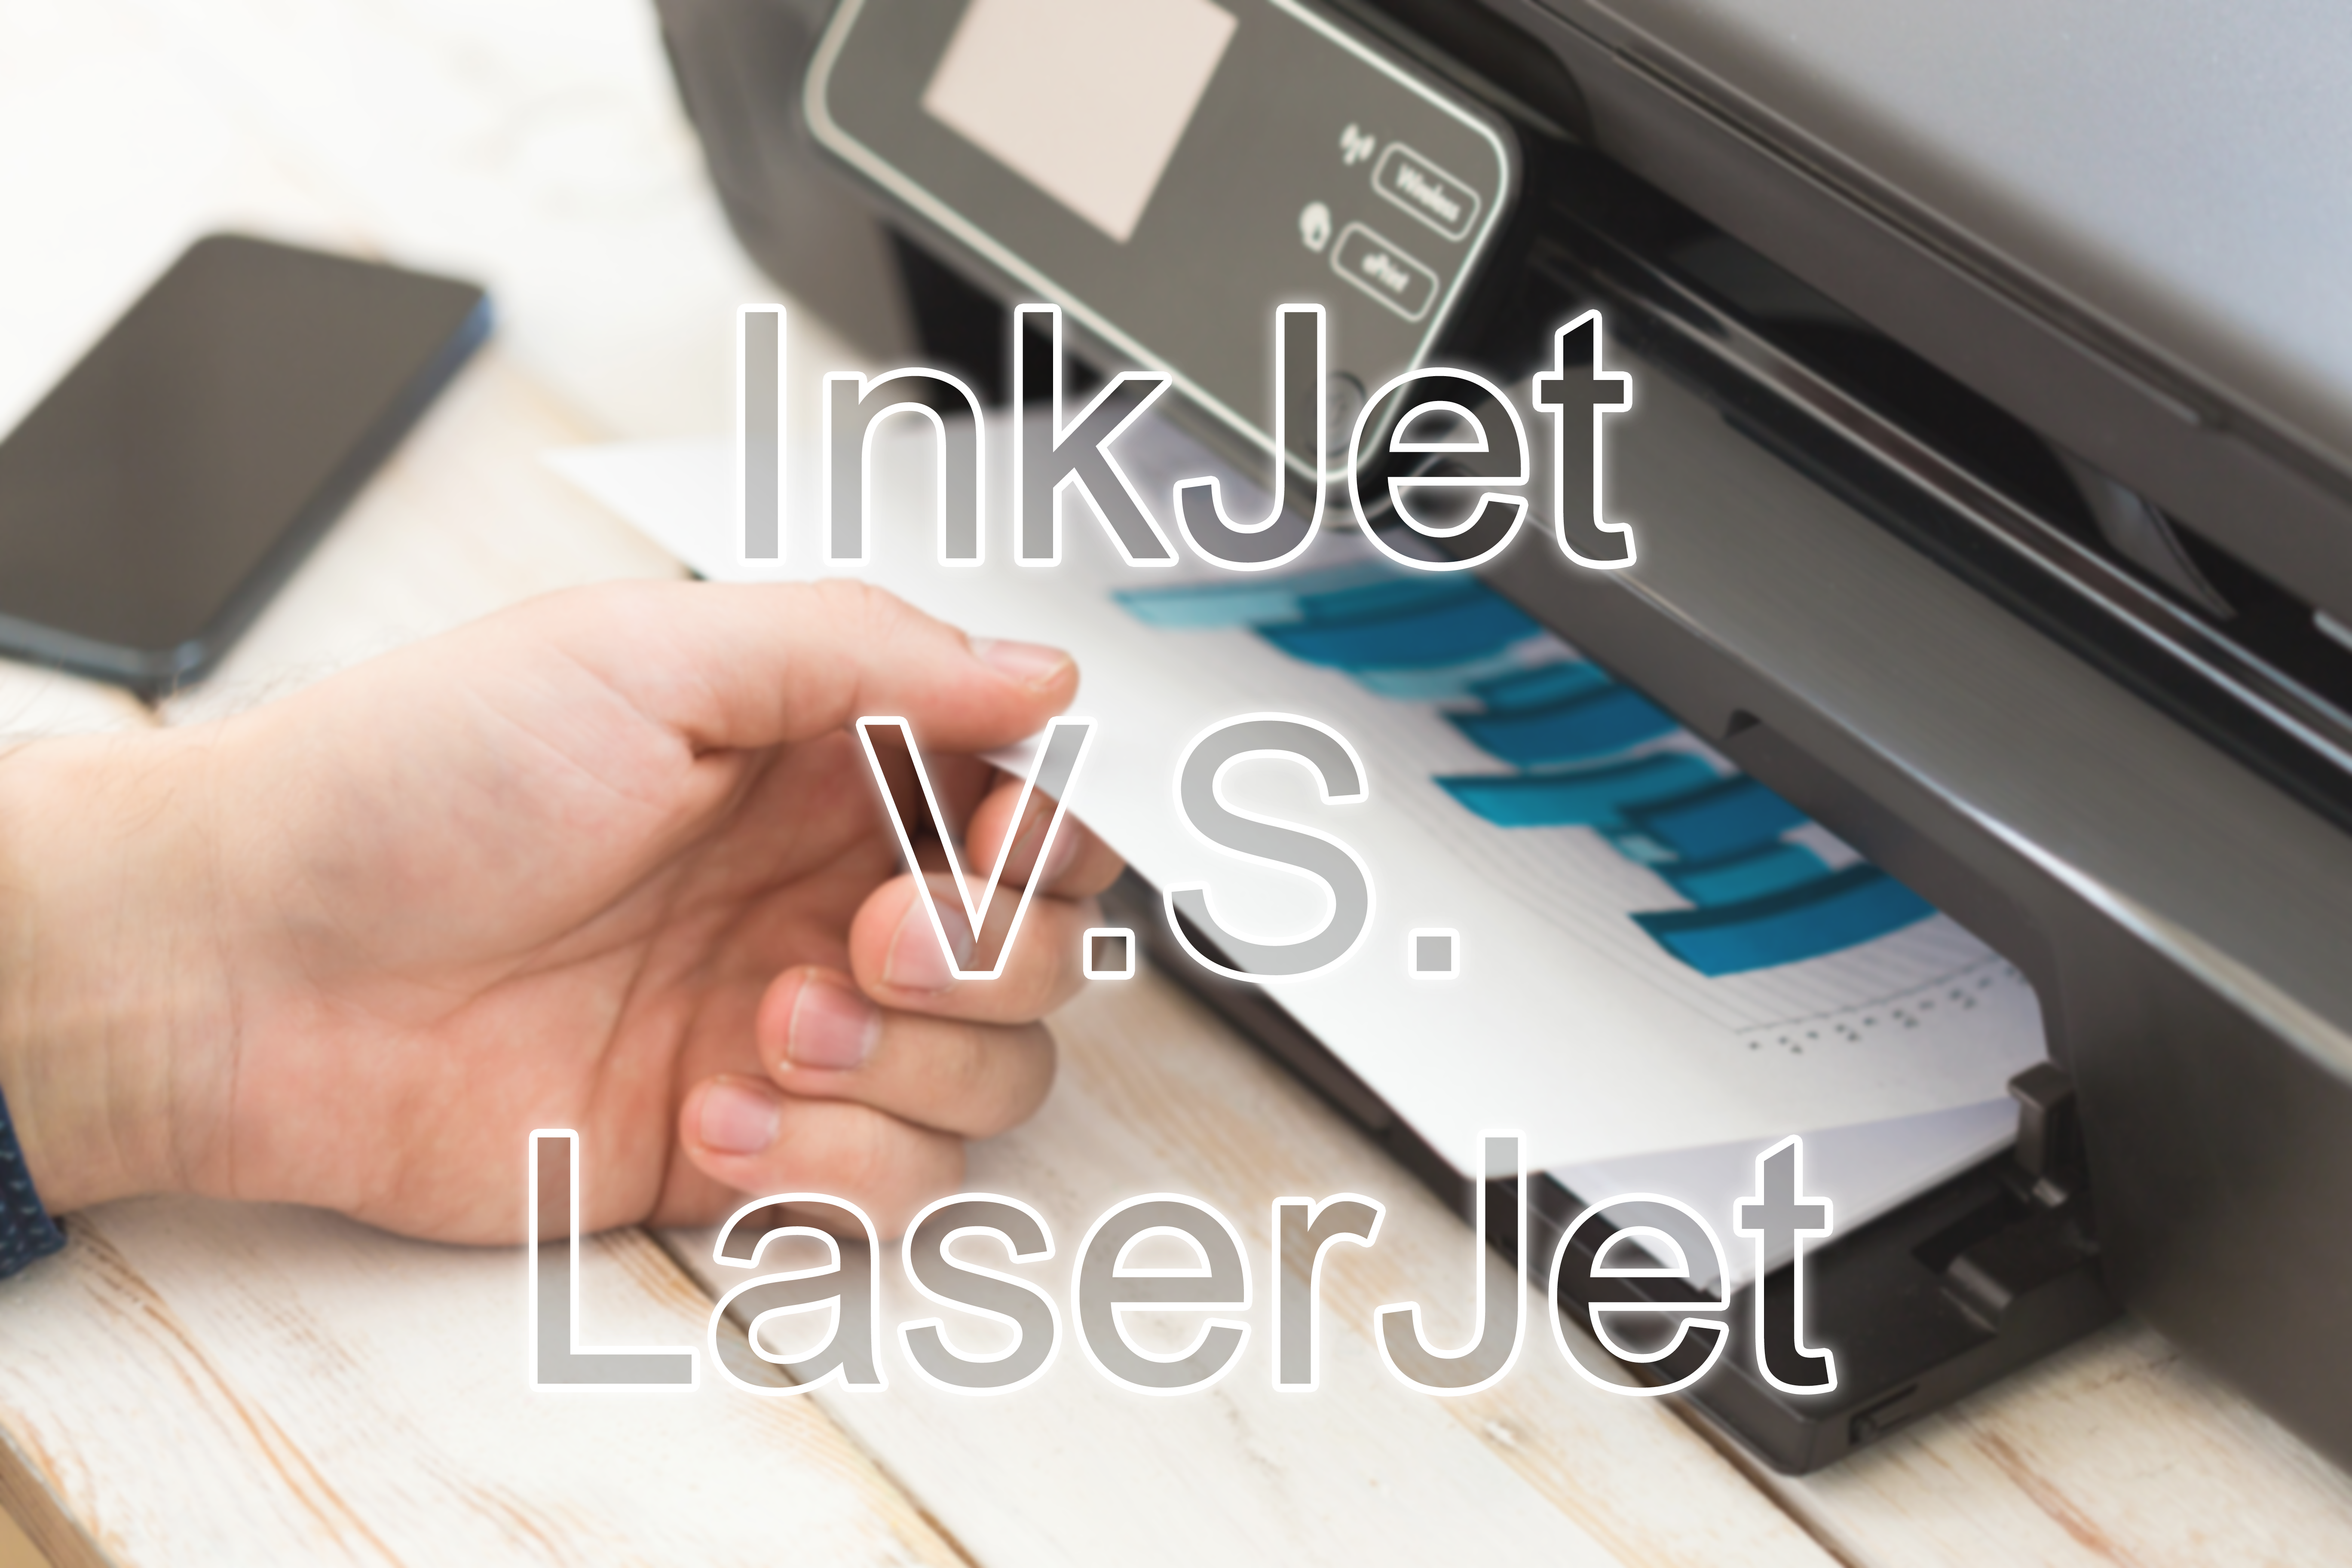 InkJet vs LaserJet Printers